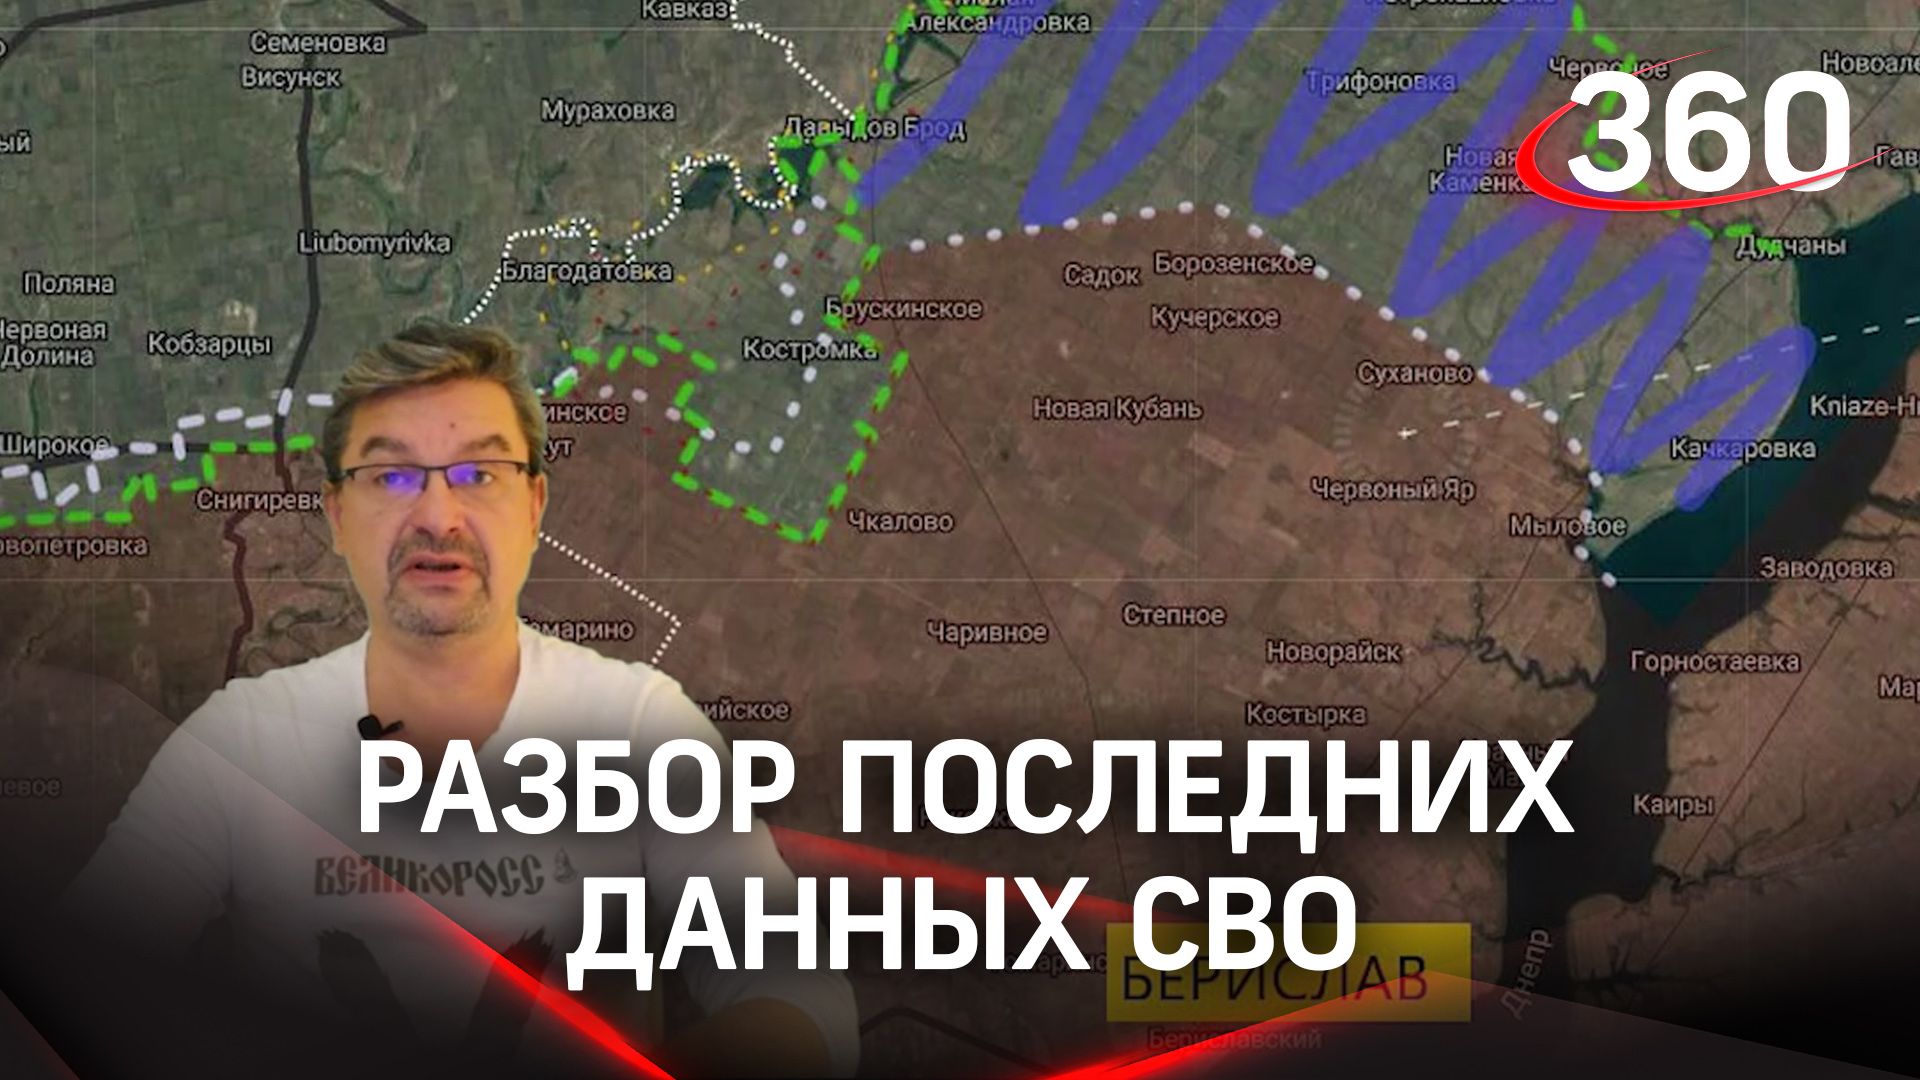 «Враг прощупывает нашу оборону»: политолог Михаил Онуфриенко с разбором последних данных СВО